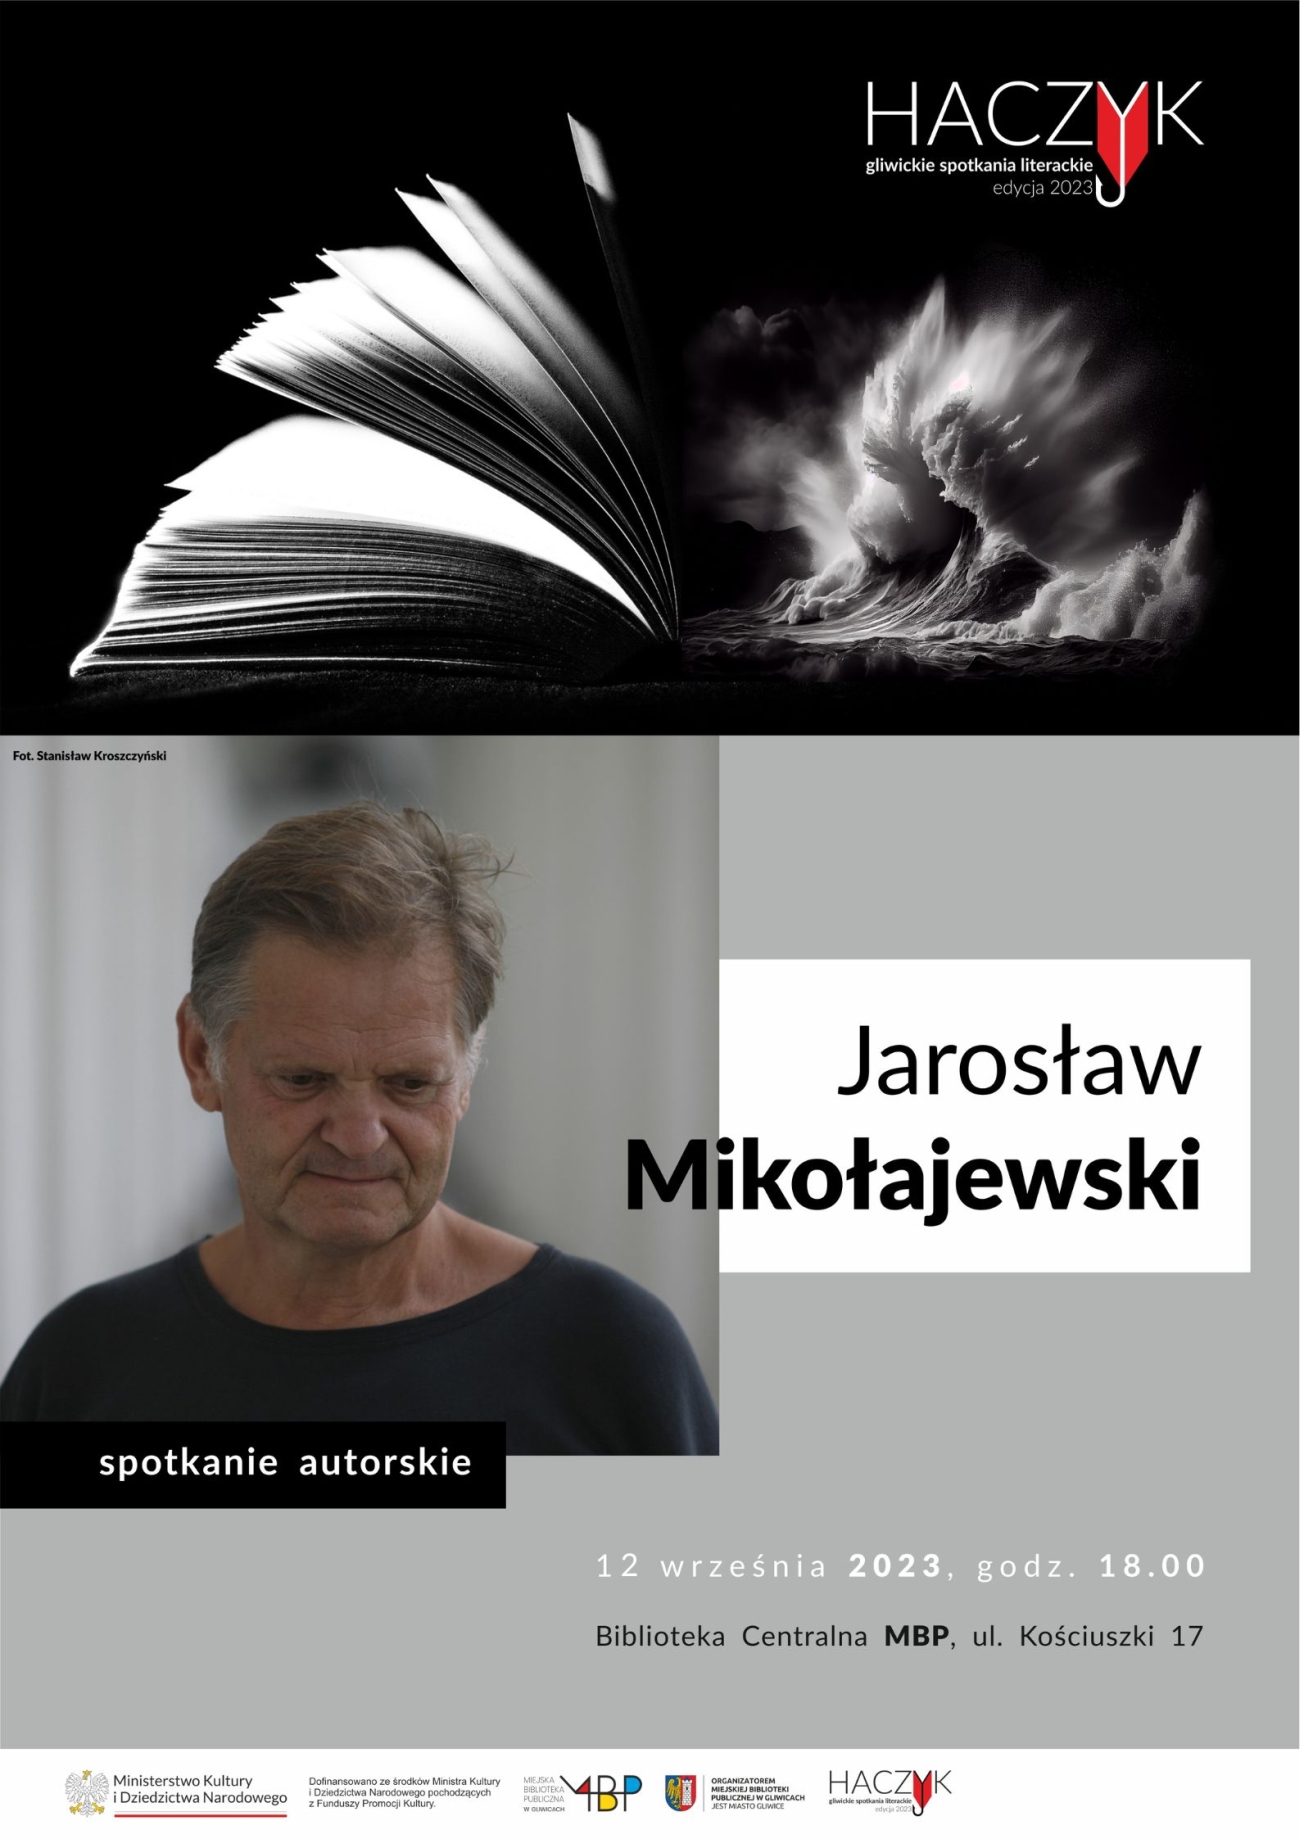 Plakat promujacy spotkanie z Jarosławem Mikołajewskim